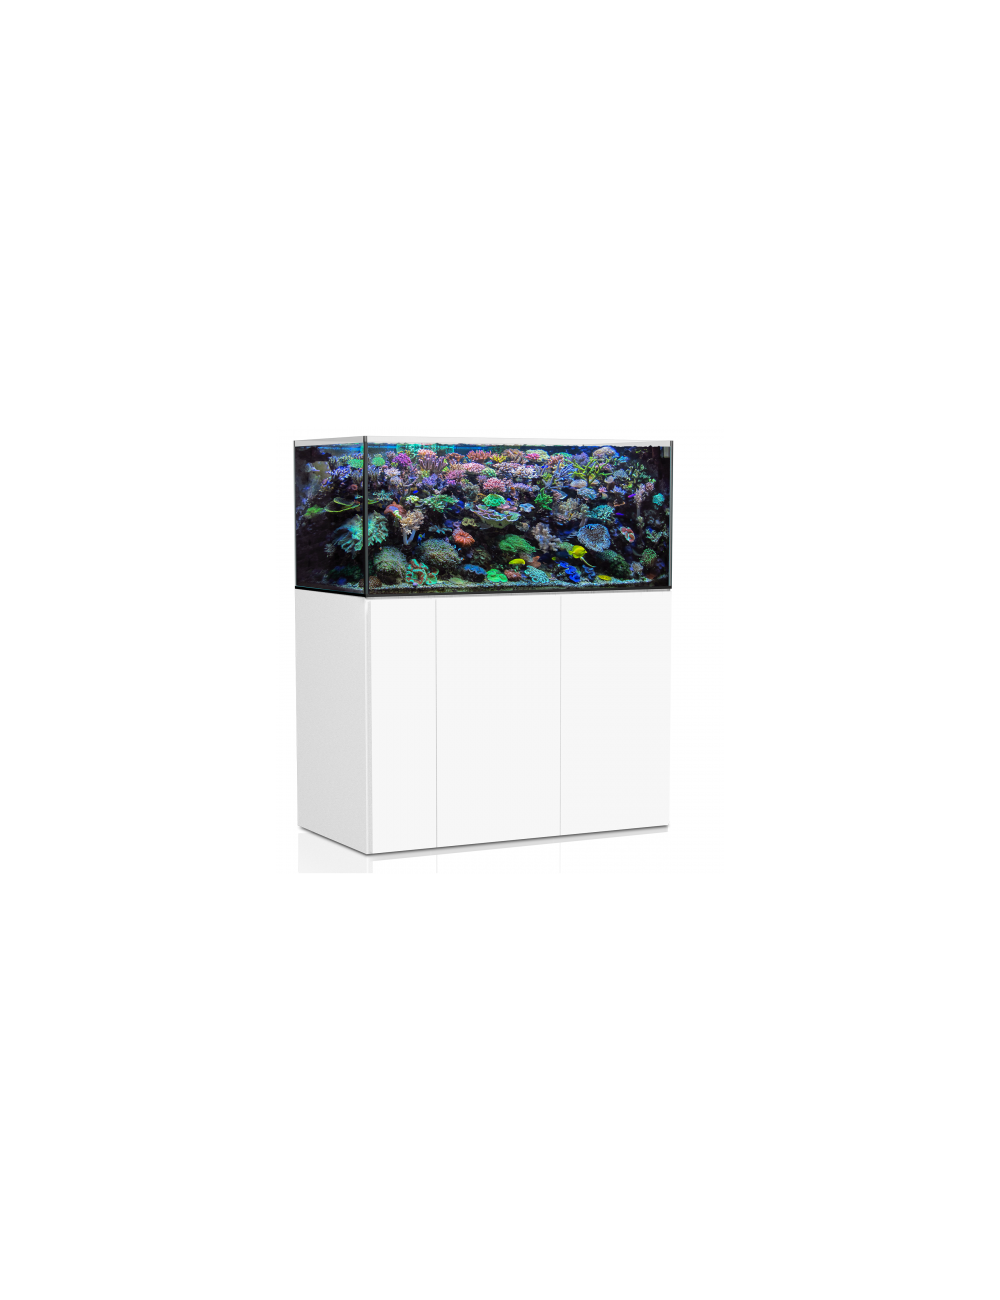 AquaMedic Armatus 450 Blanc aquarium d'eau de mer complet avec syst